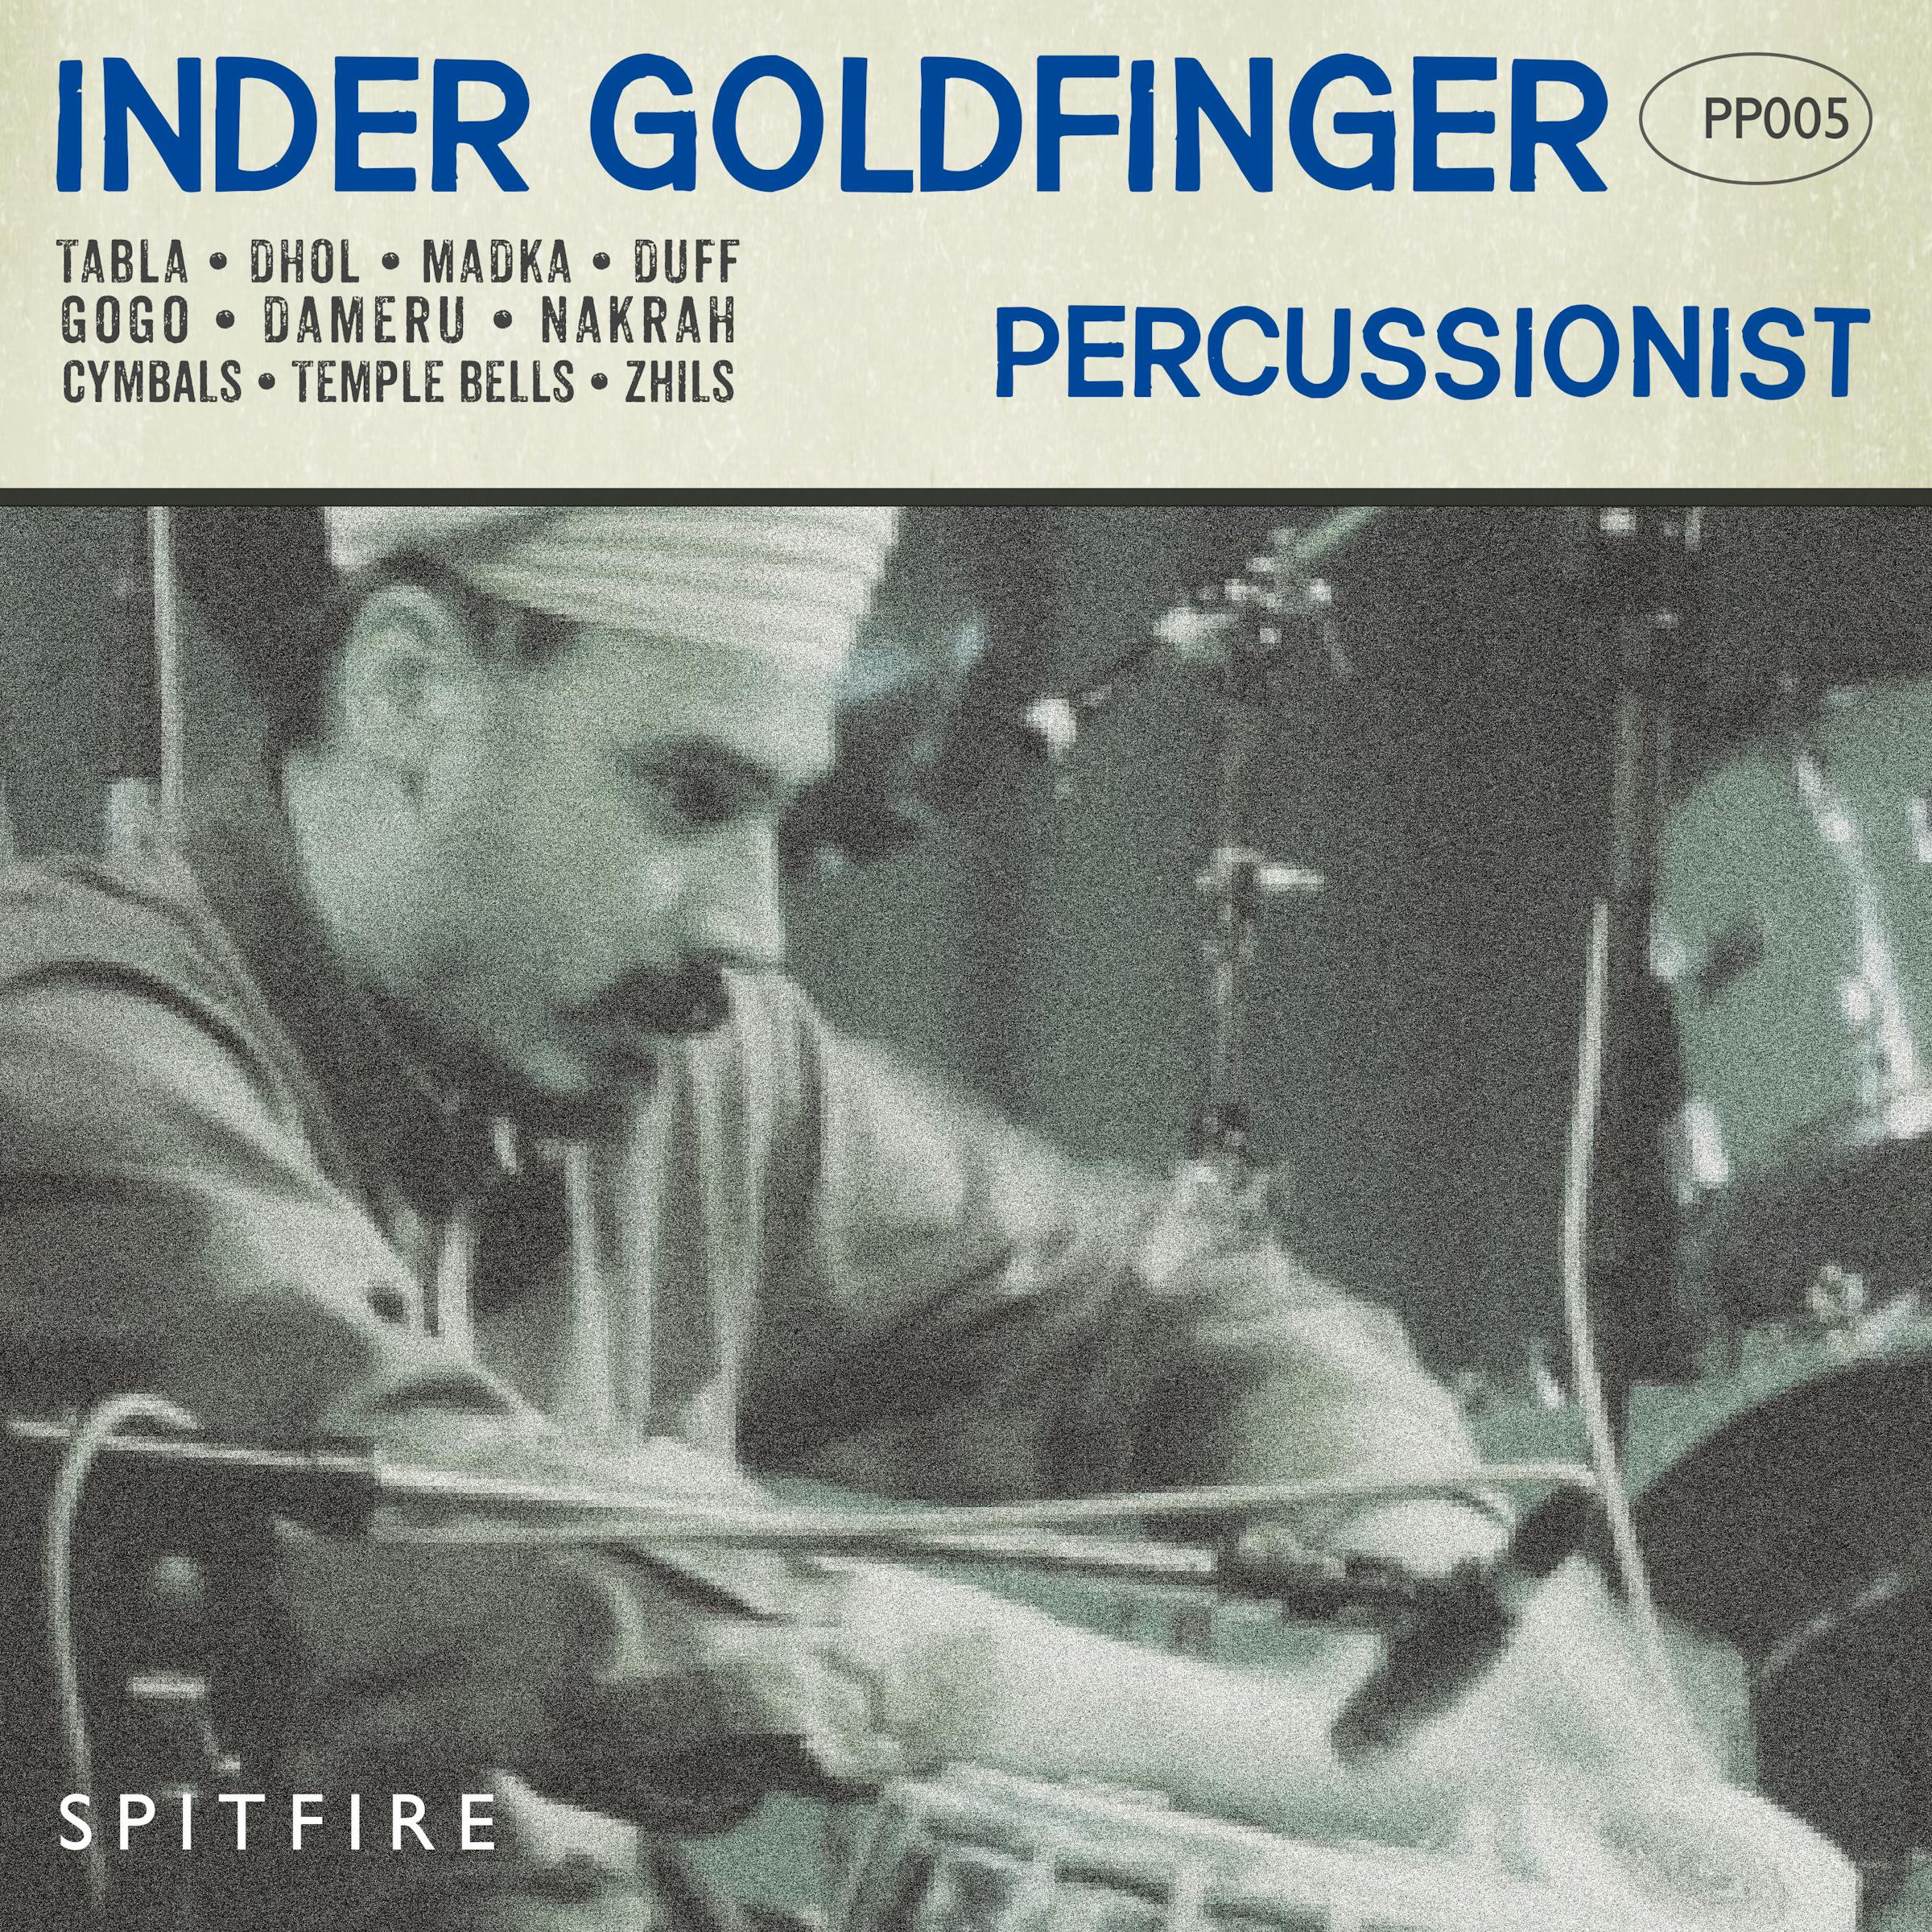 Goldfinger Percussion artwork